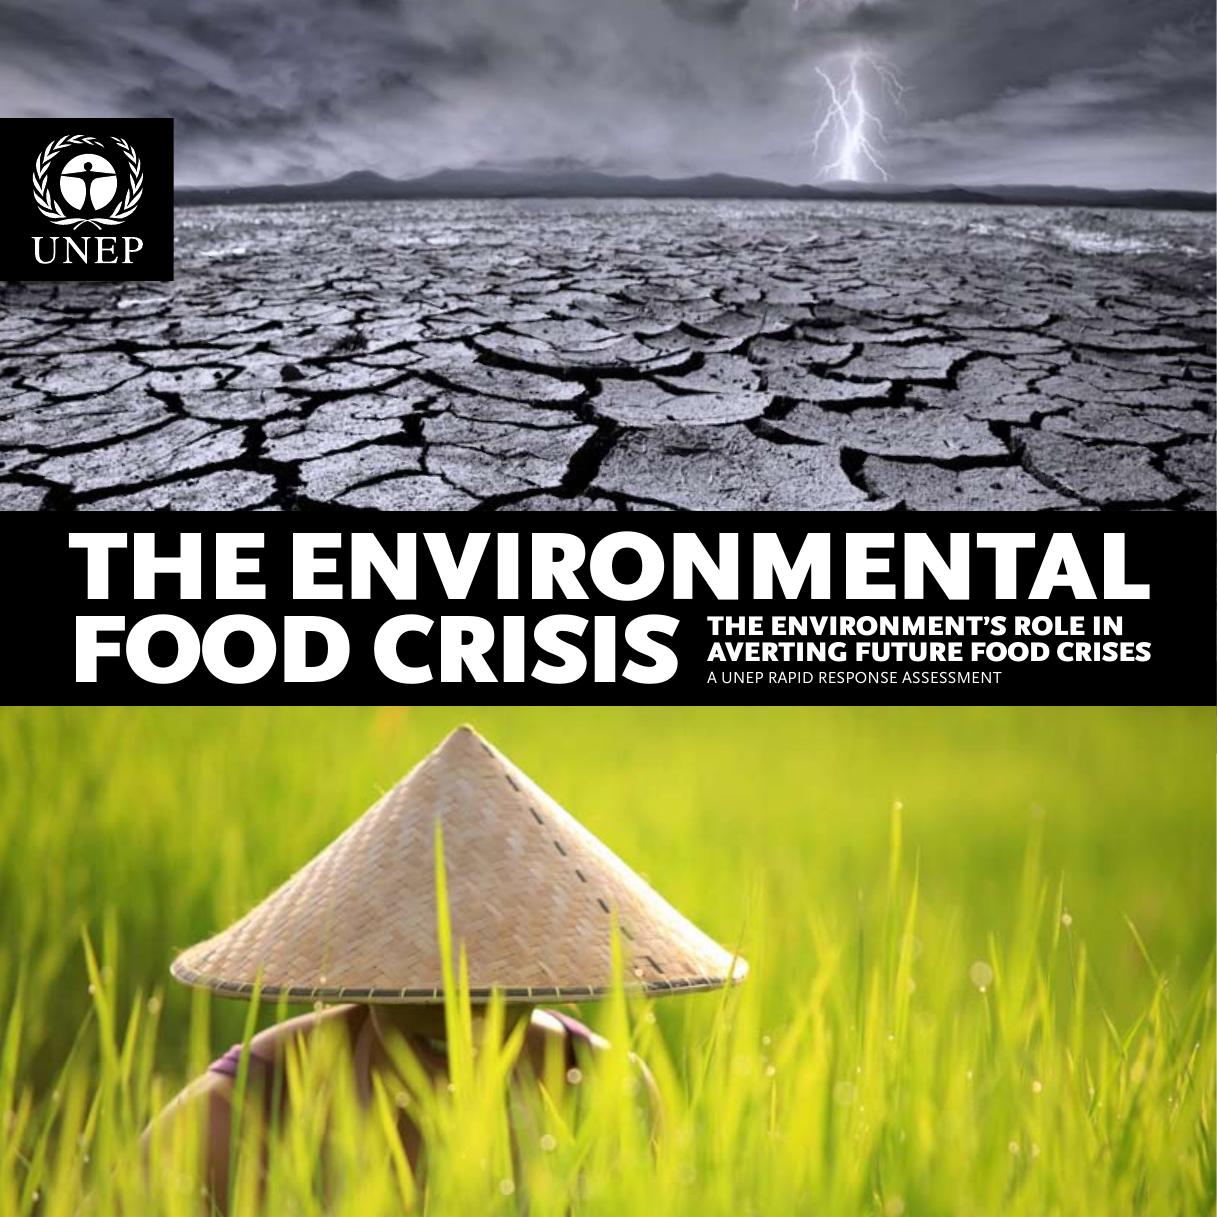 The environmental food crisis. 2009